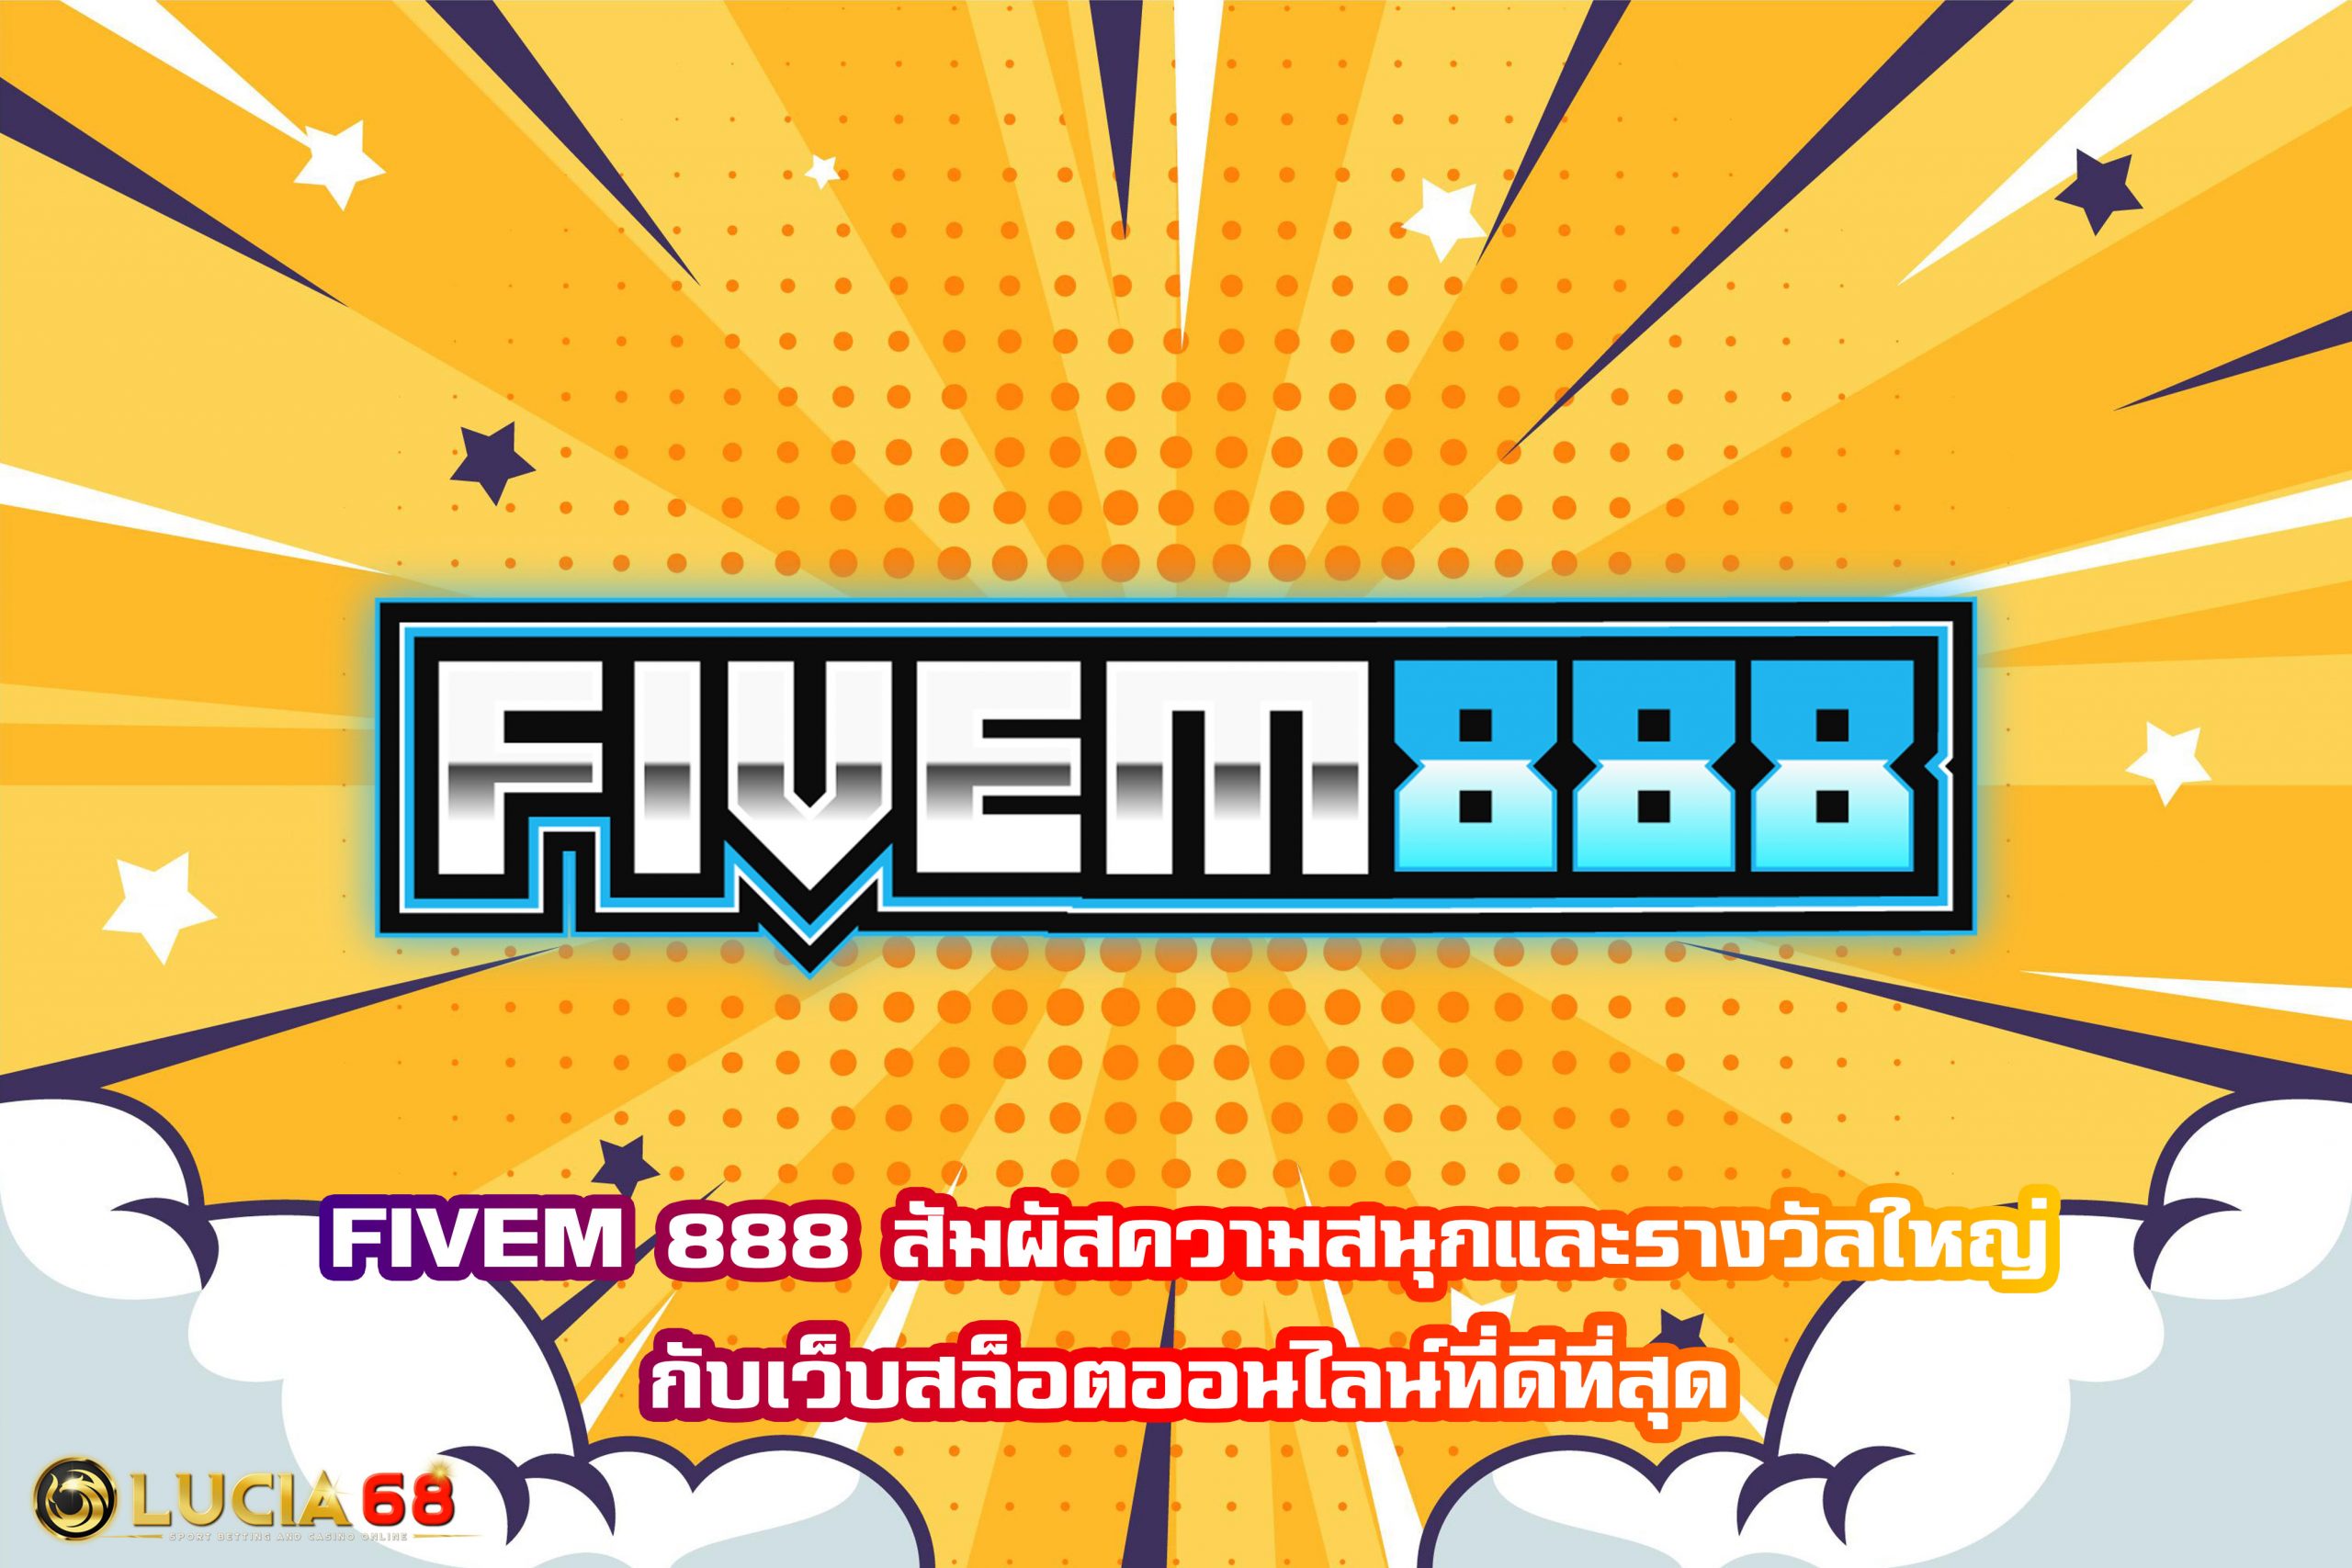 FIVEM 888 สัมผัสความสนุกและรางวัลใหญ่กับเว็บสล็อตออนไลน์ที่ดีที่สุด